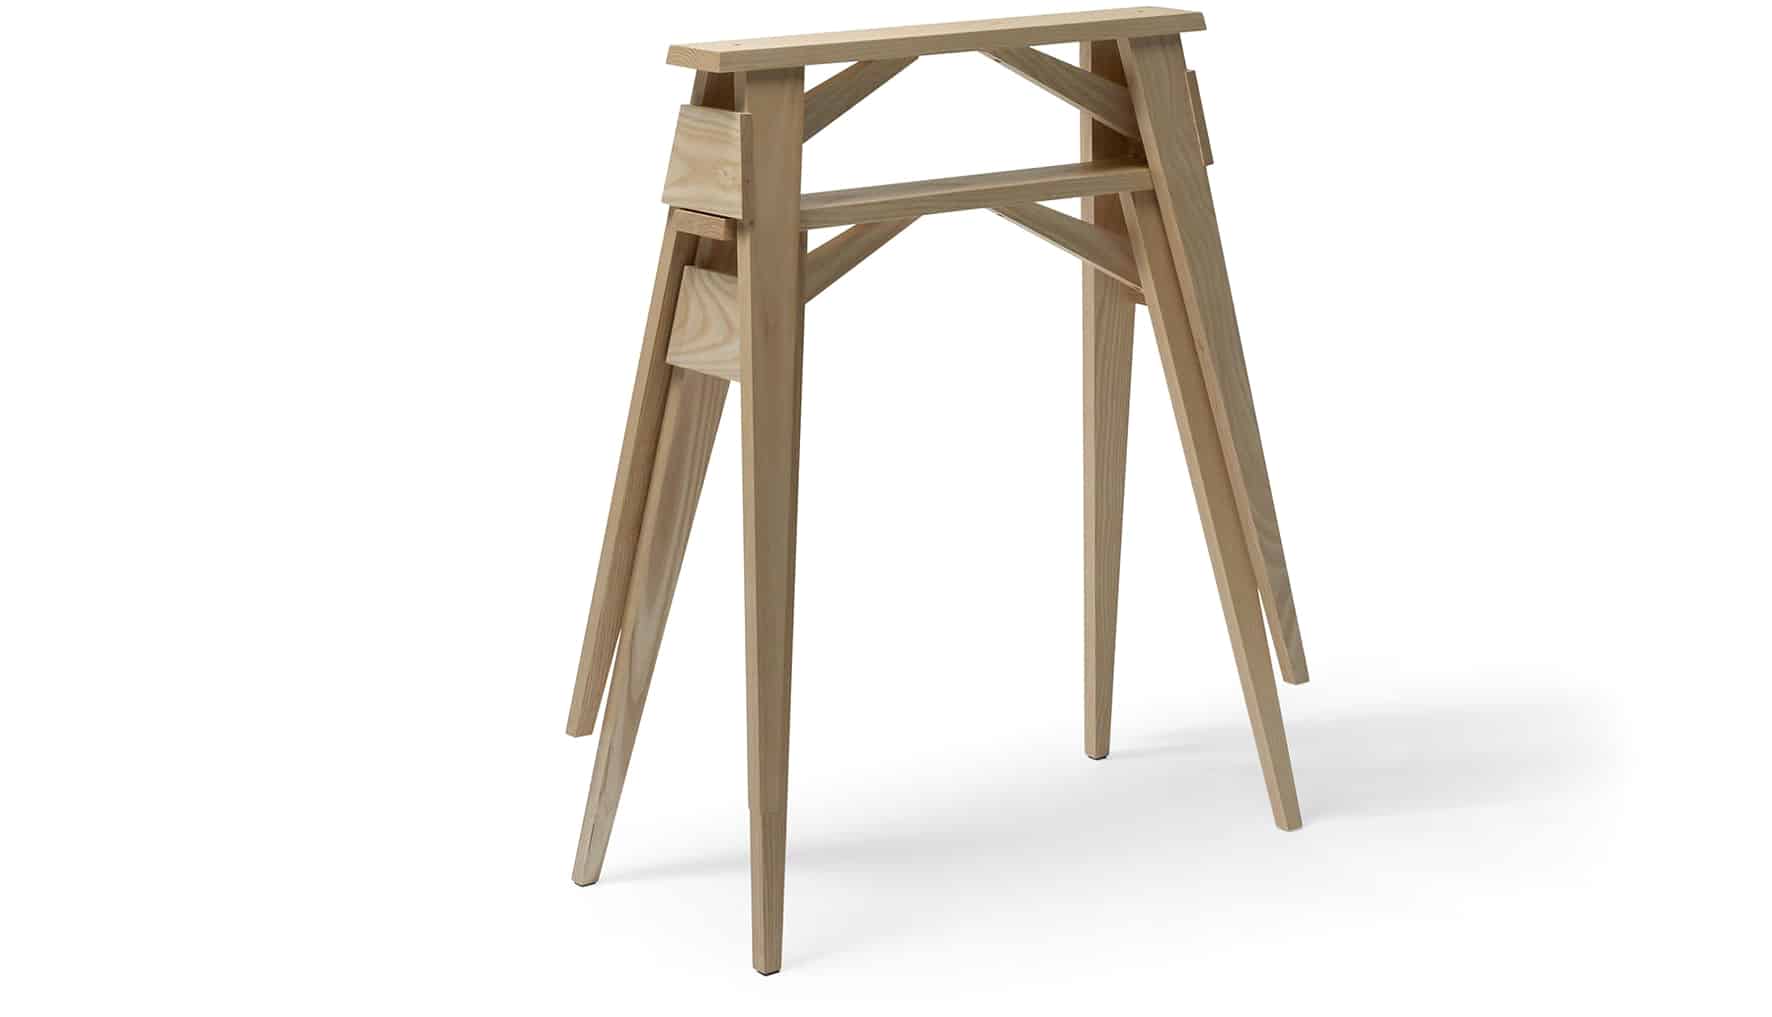 Tréteau bureau - Tréteaux en bois ou acier et pieds - IKEA